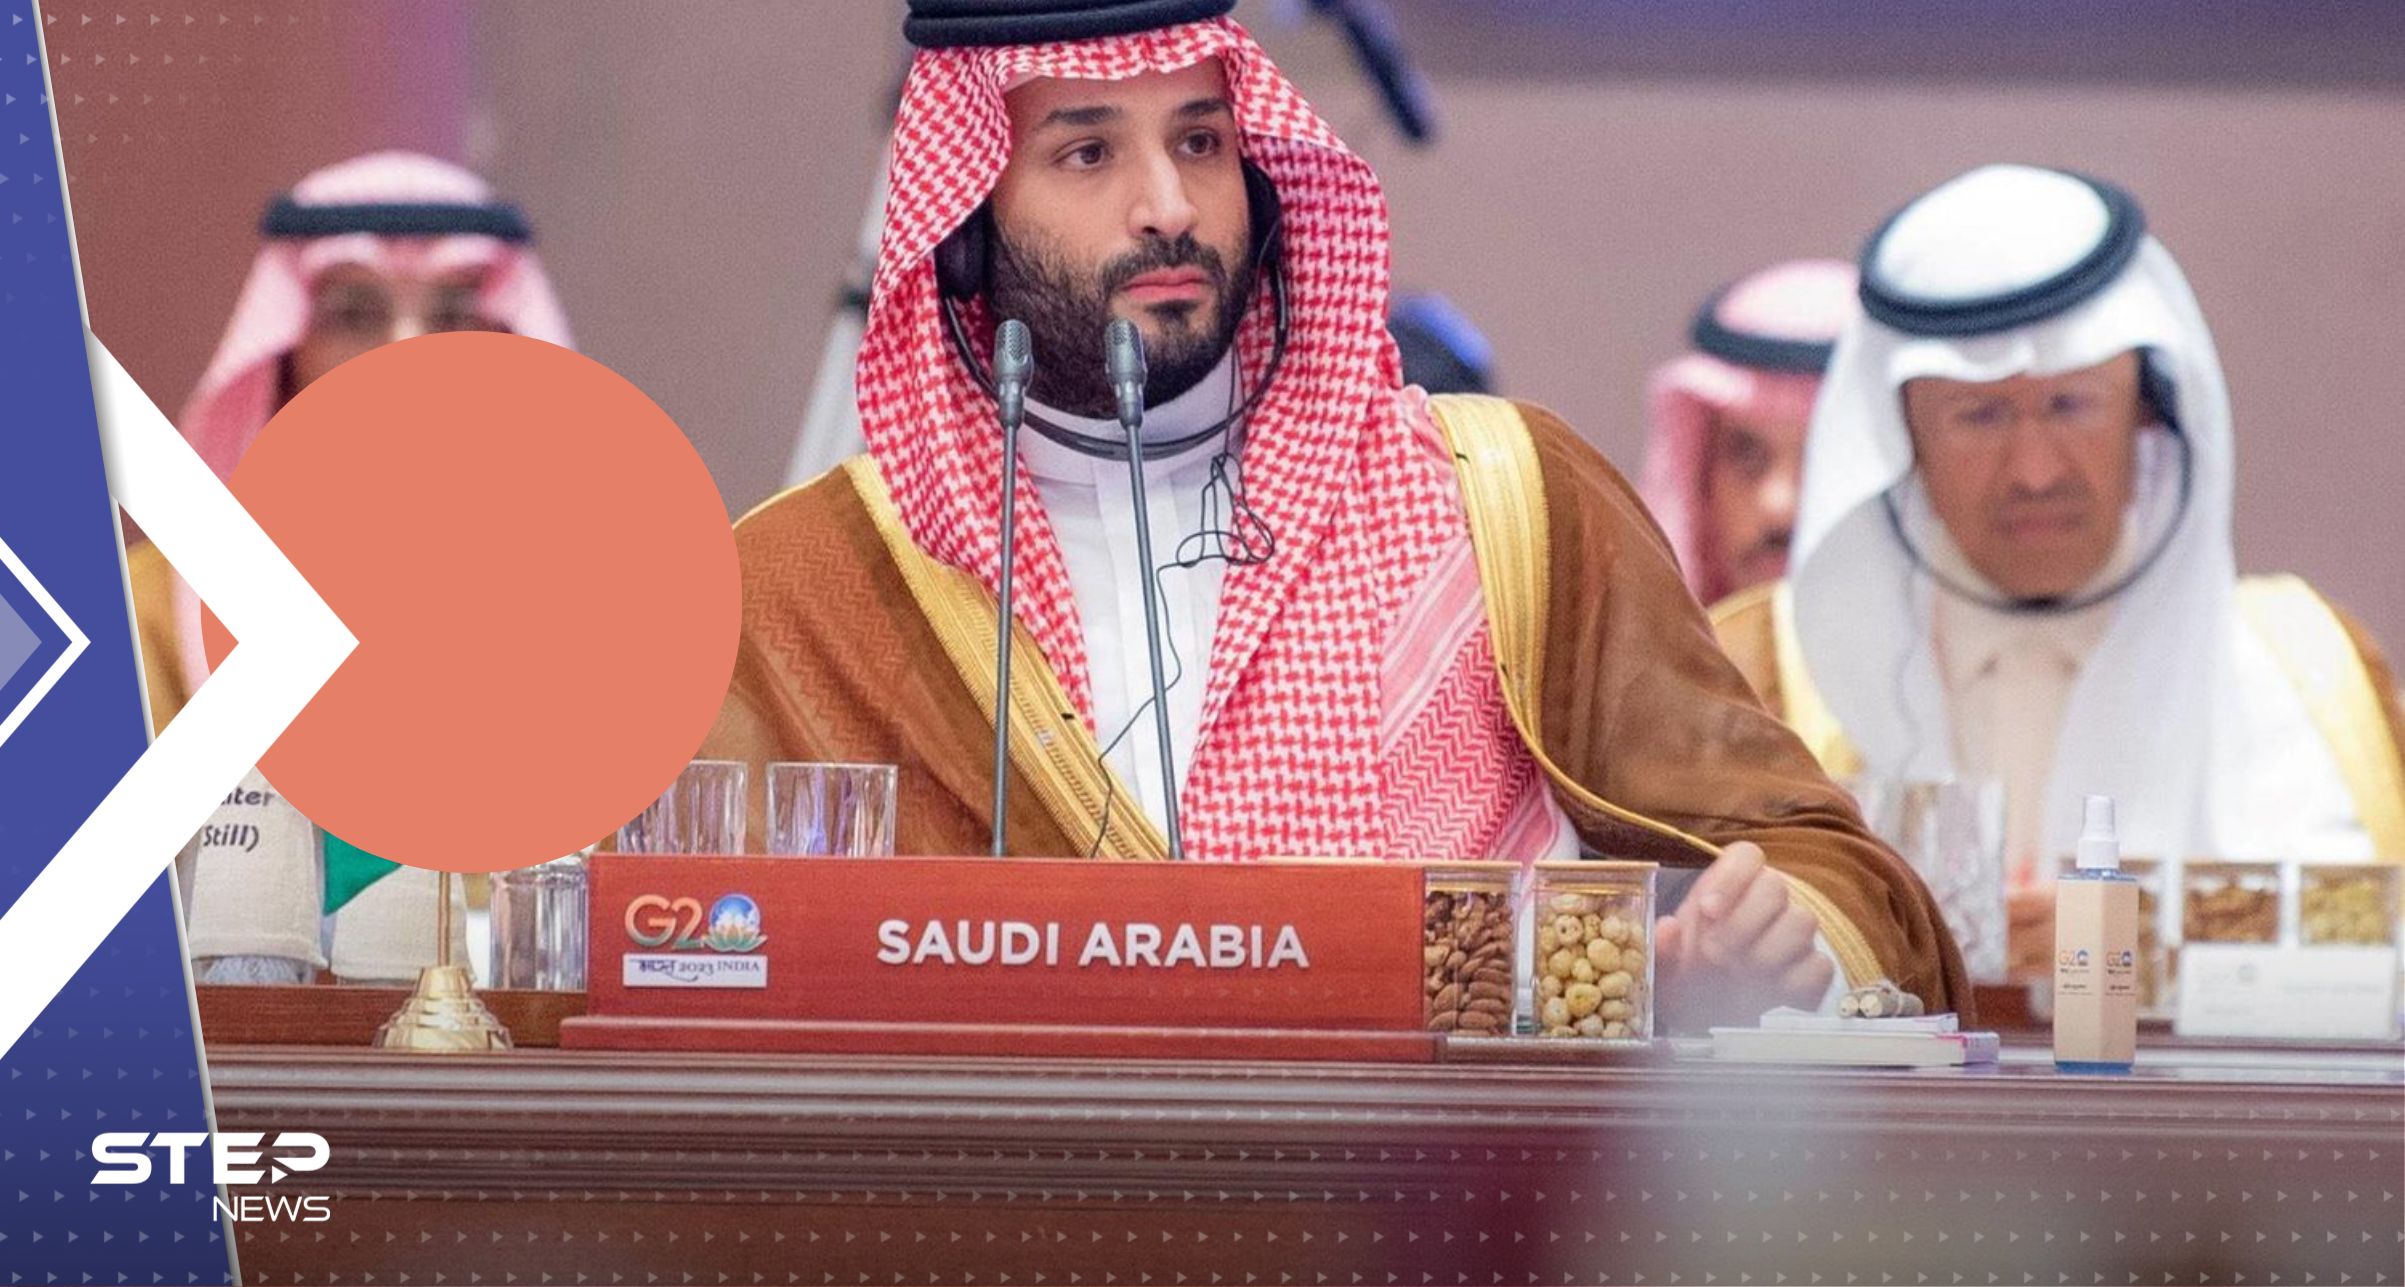 ولي العهد السعودي يعلن عن مشروع اقتصادي بين الهند والشرق الأوسط وأوروبا